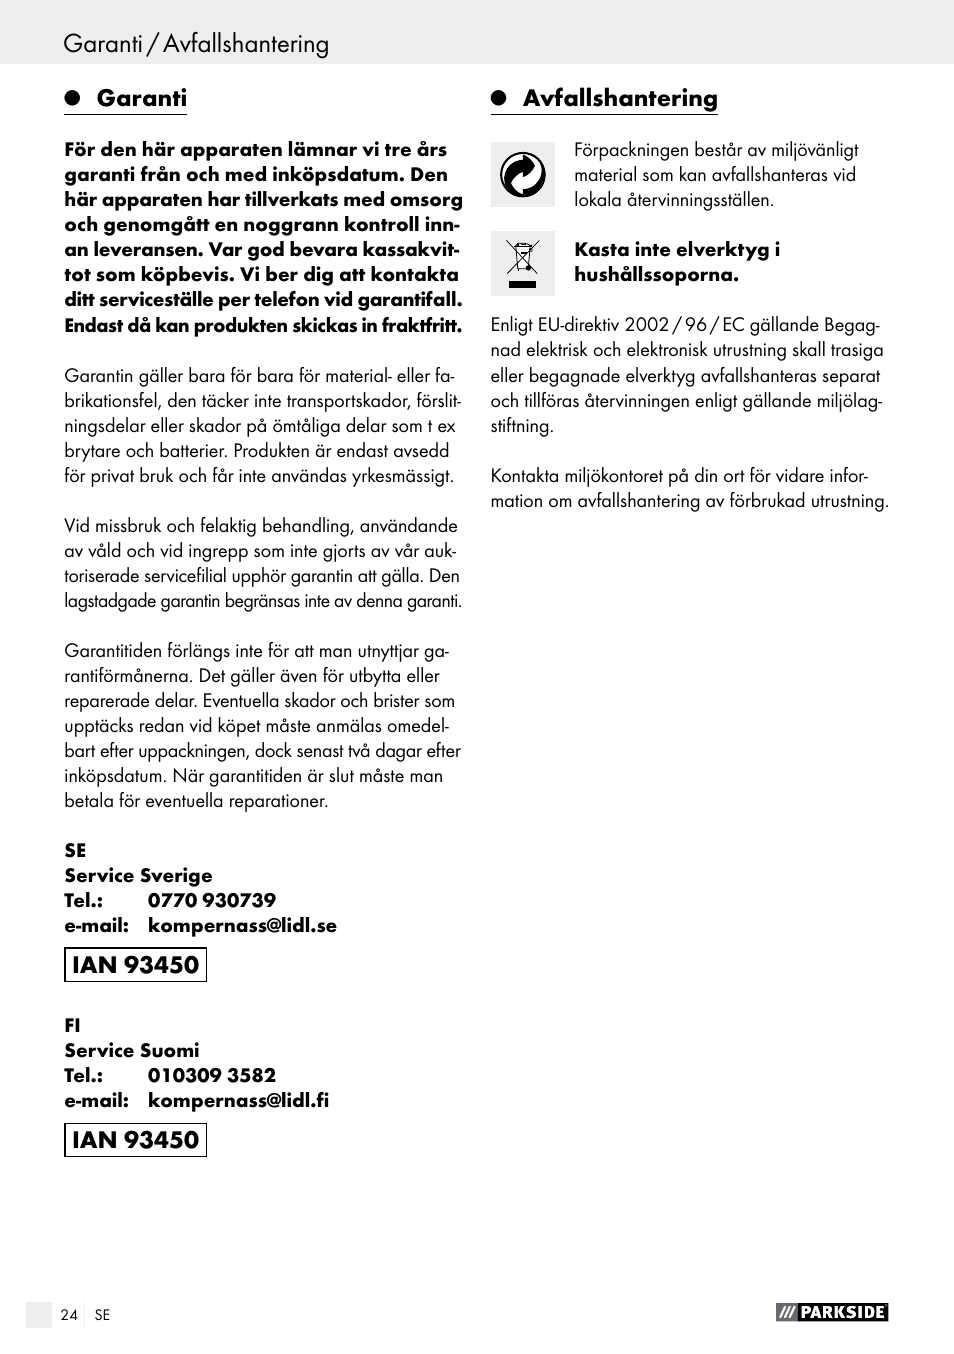 Garanti / avfallshantering, Konformitetsdeklaration / tillverkarintyg |  Parkside PHET 15 A1 User Manual | Page 24 / 58